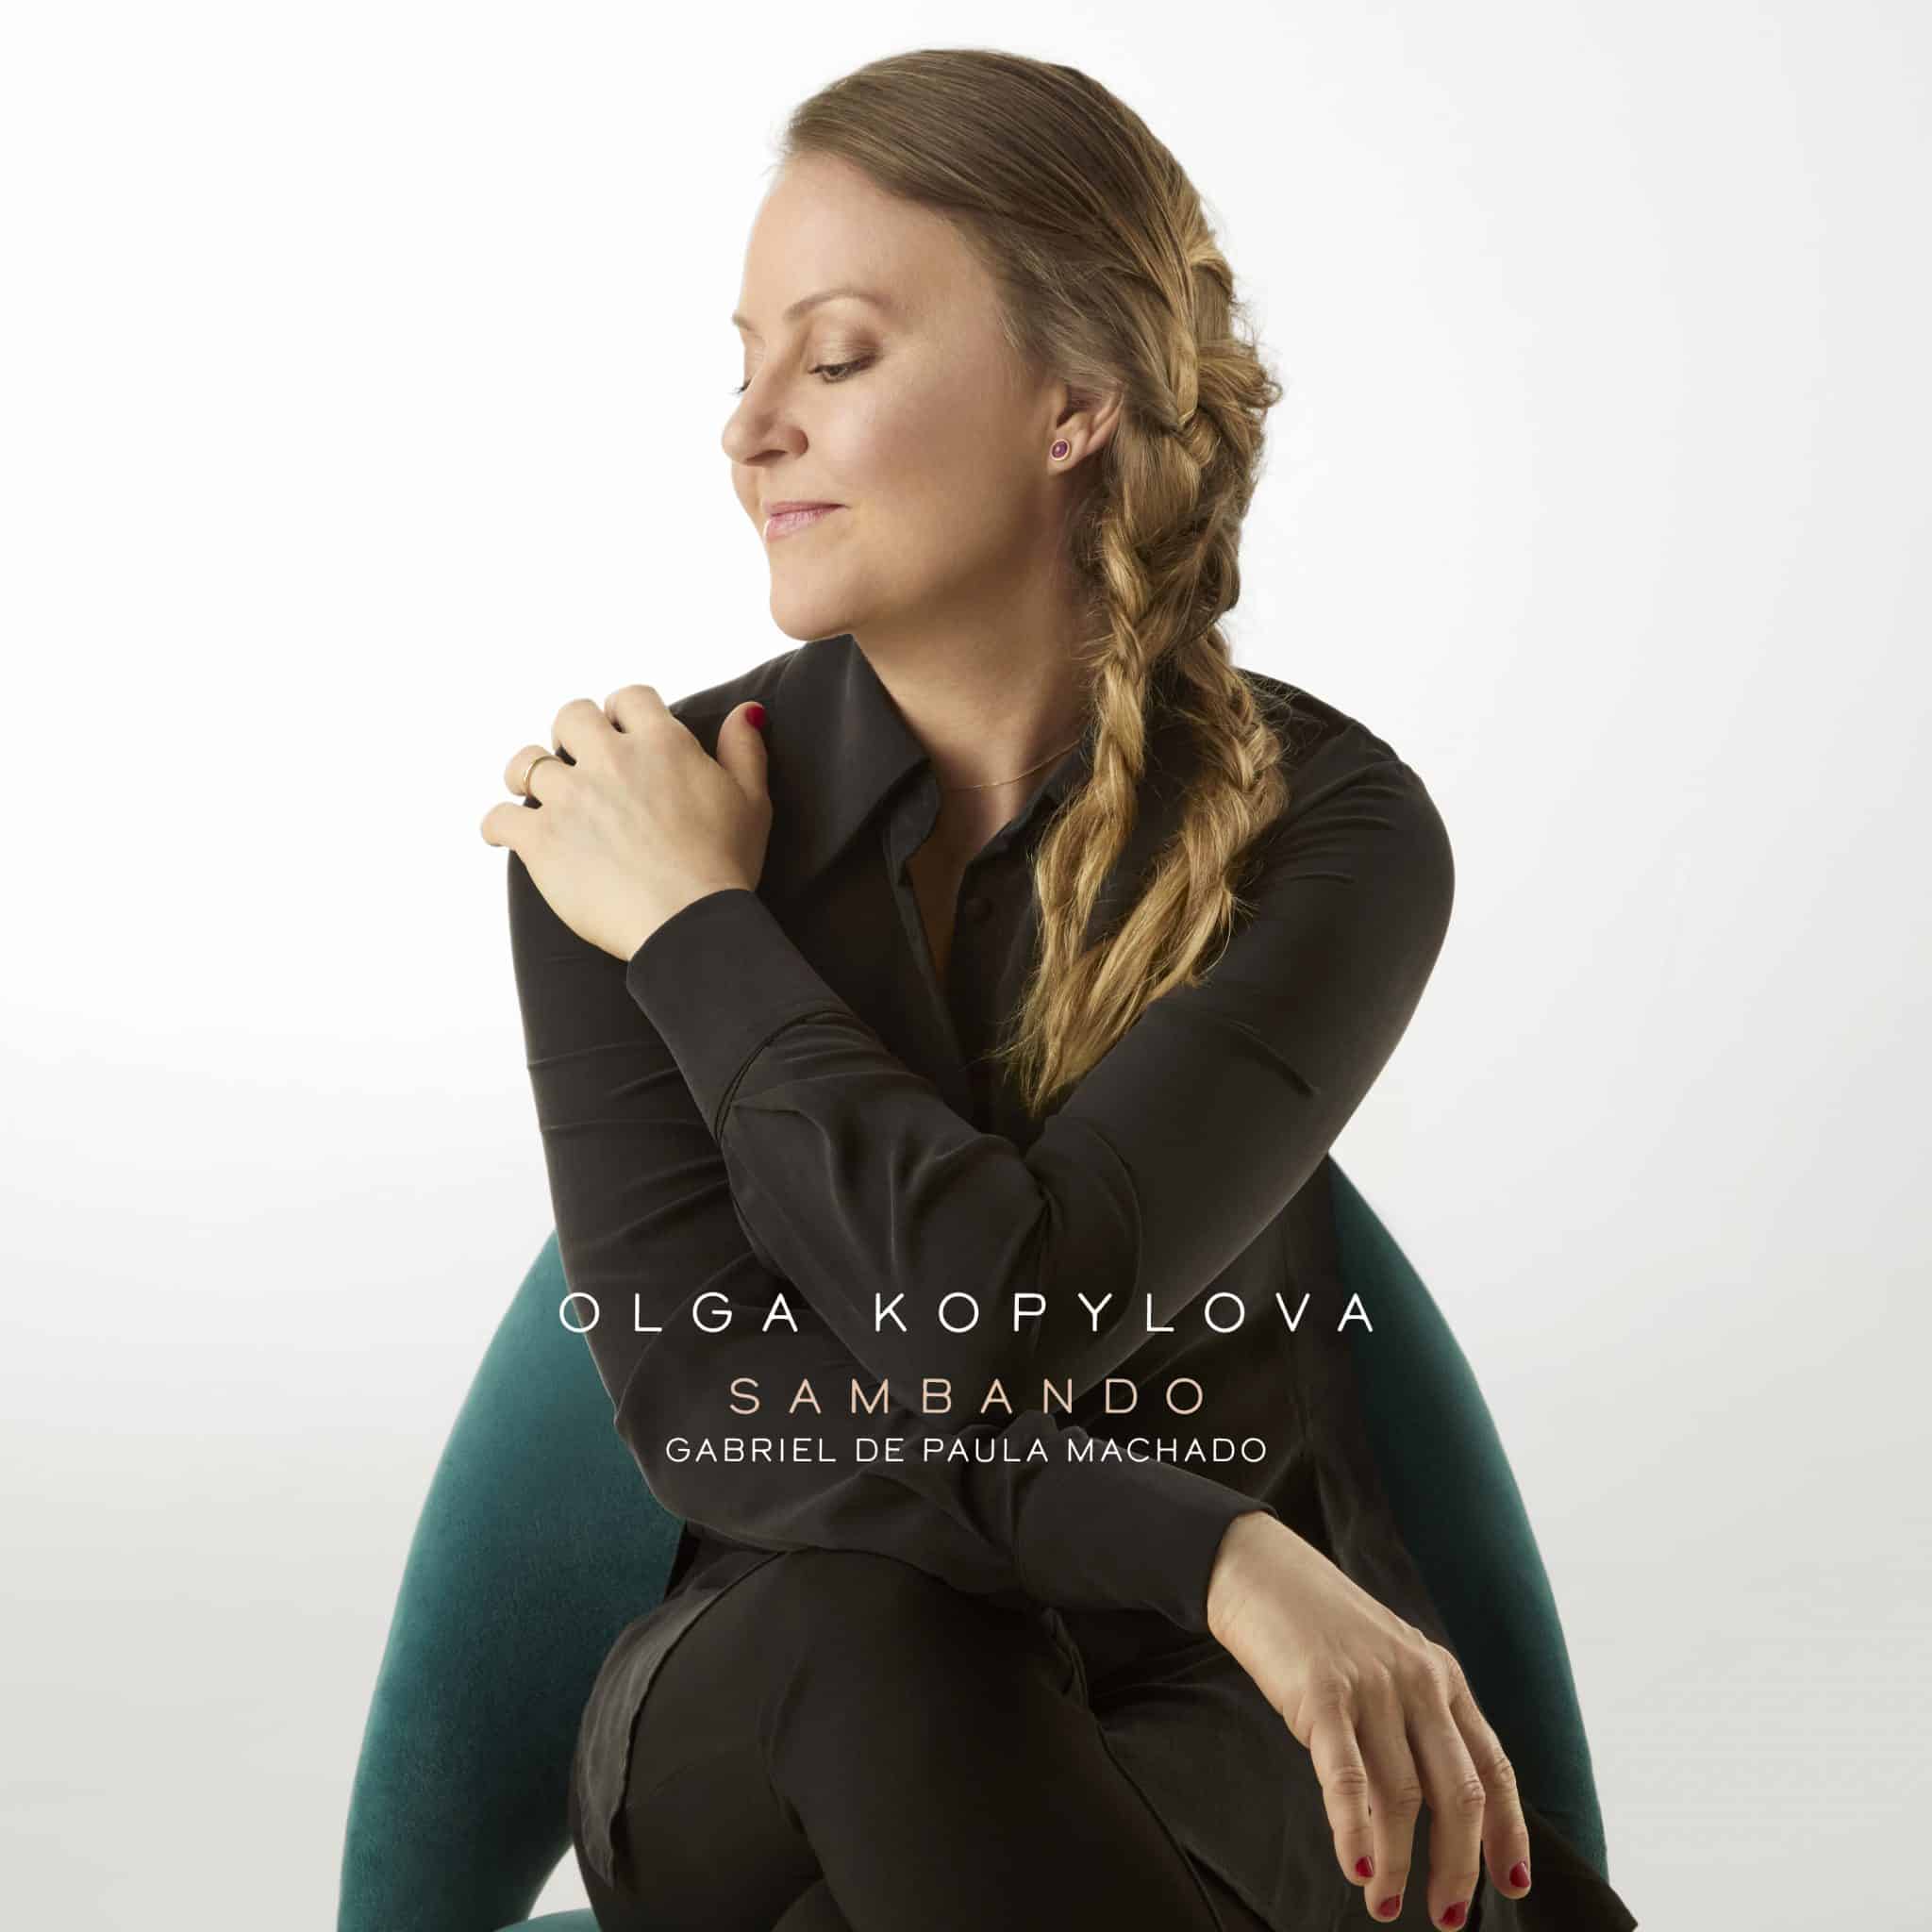 revistaprosaversoearte.com - Olga Kopylova lança o terceiro single 'Sambando'